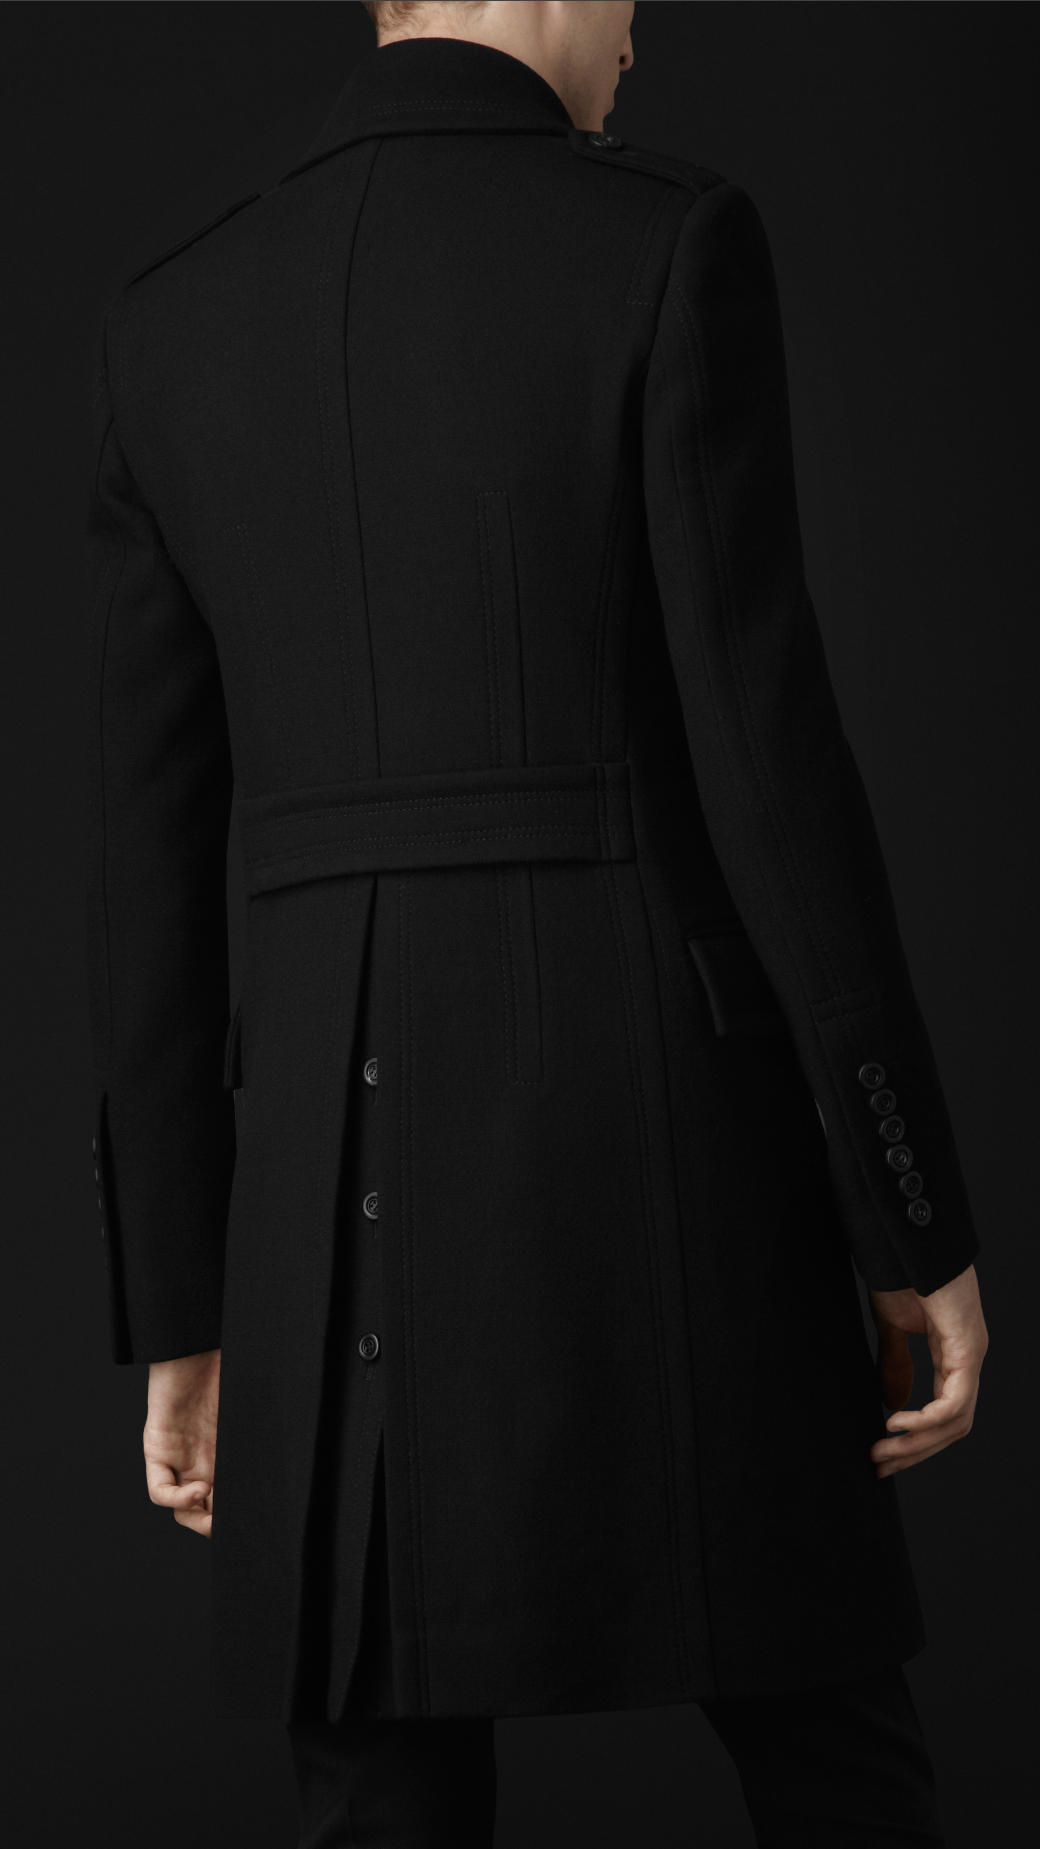 Lyst Burberry Prorsum Virgin Wool Blend Top Coat In Black For Men